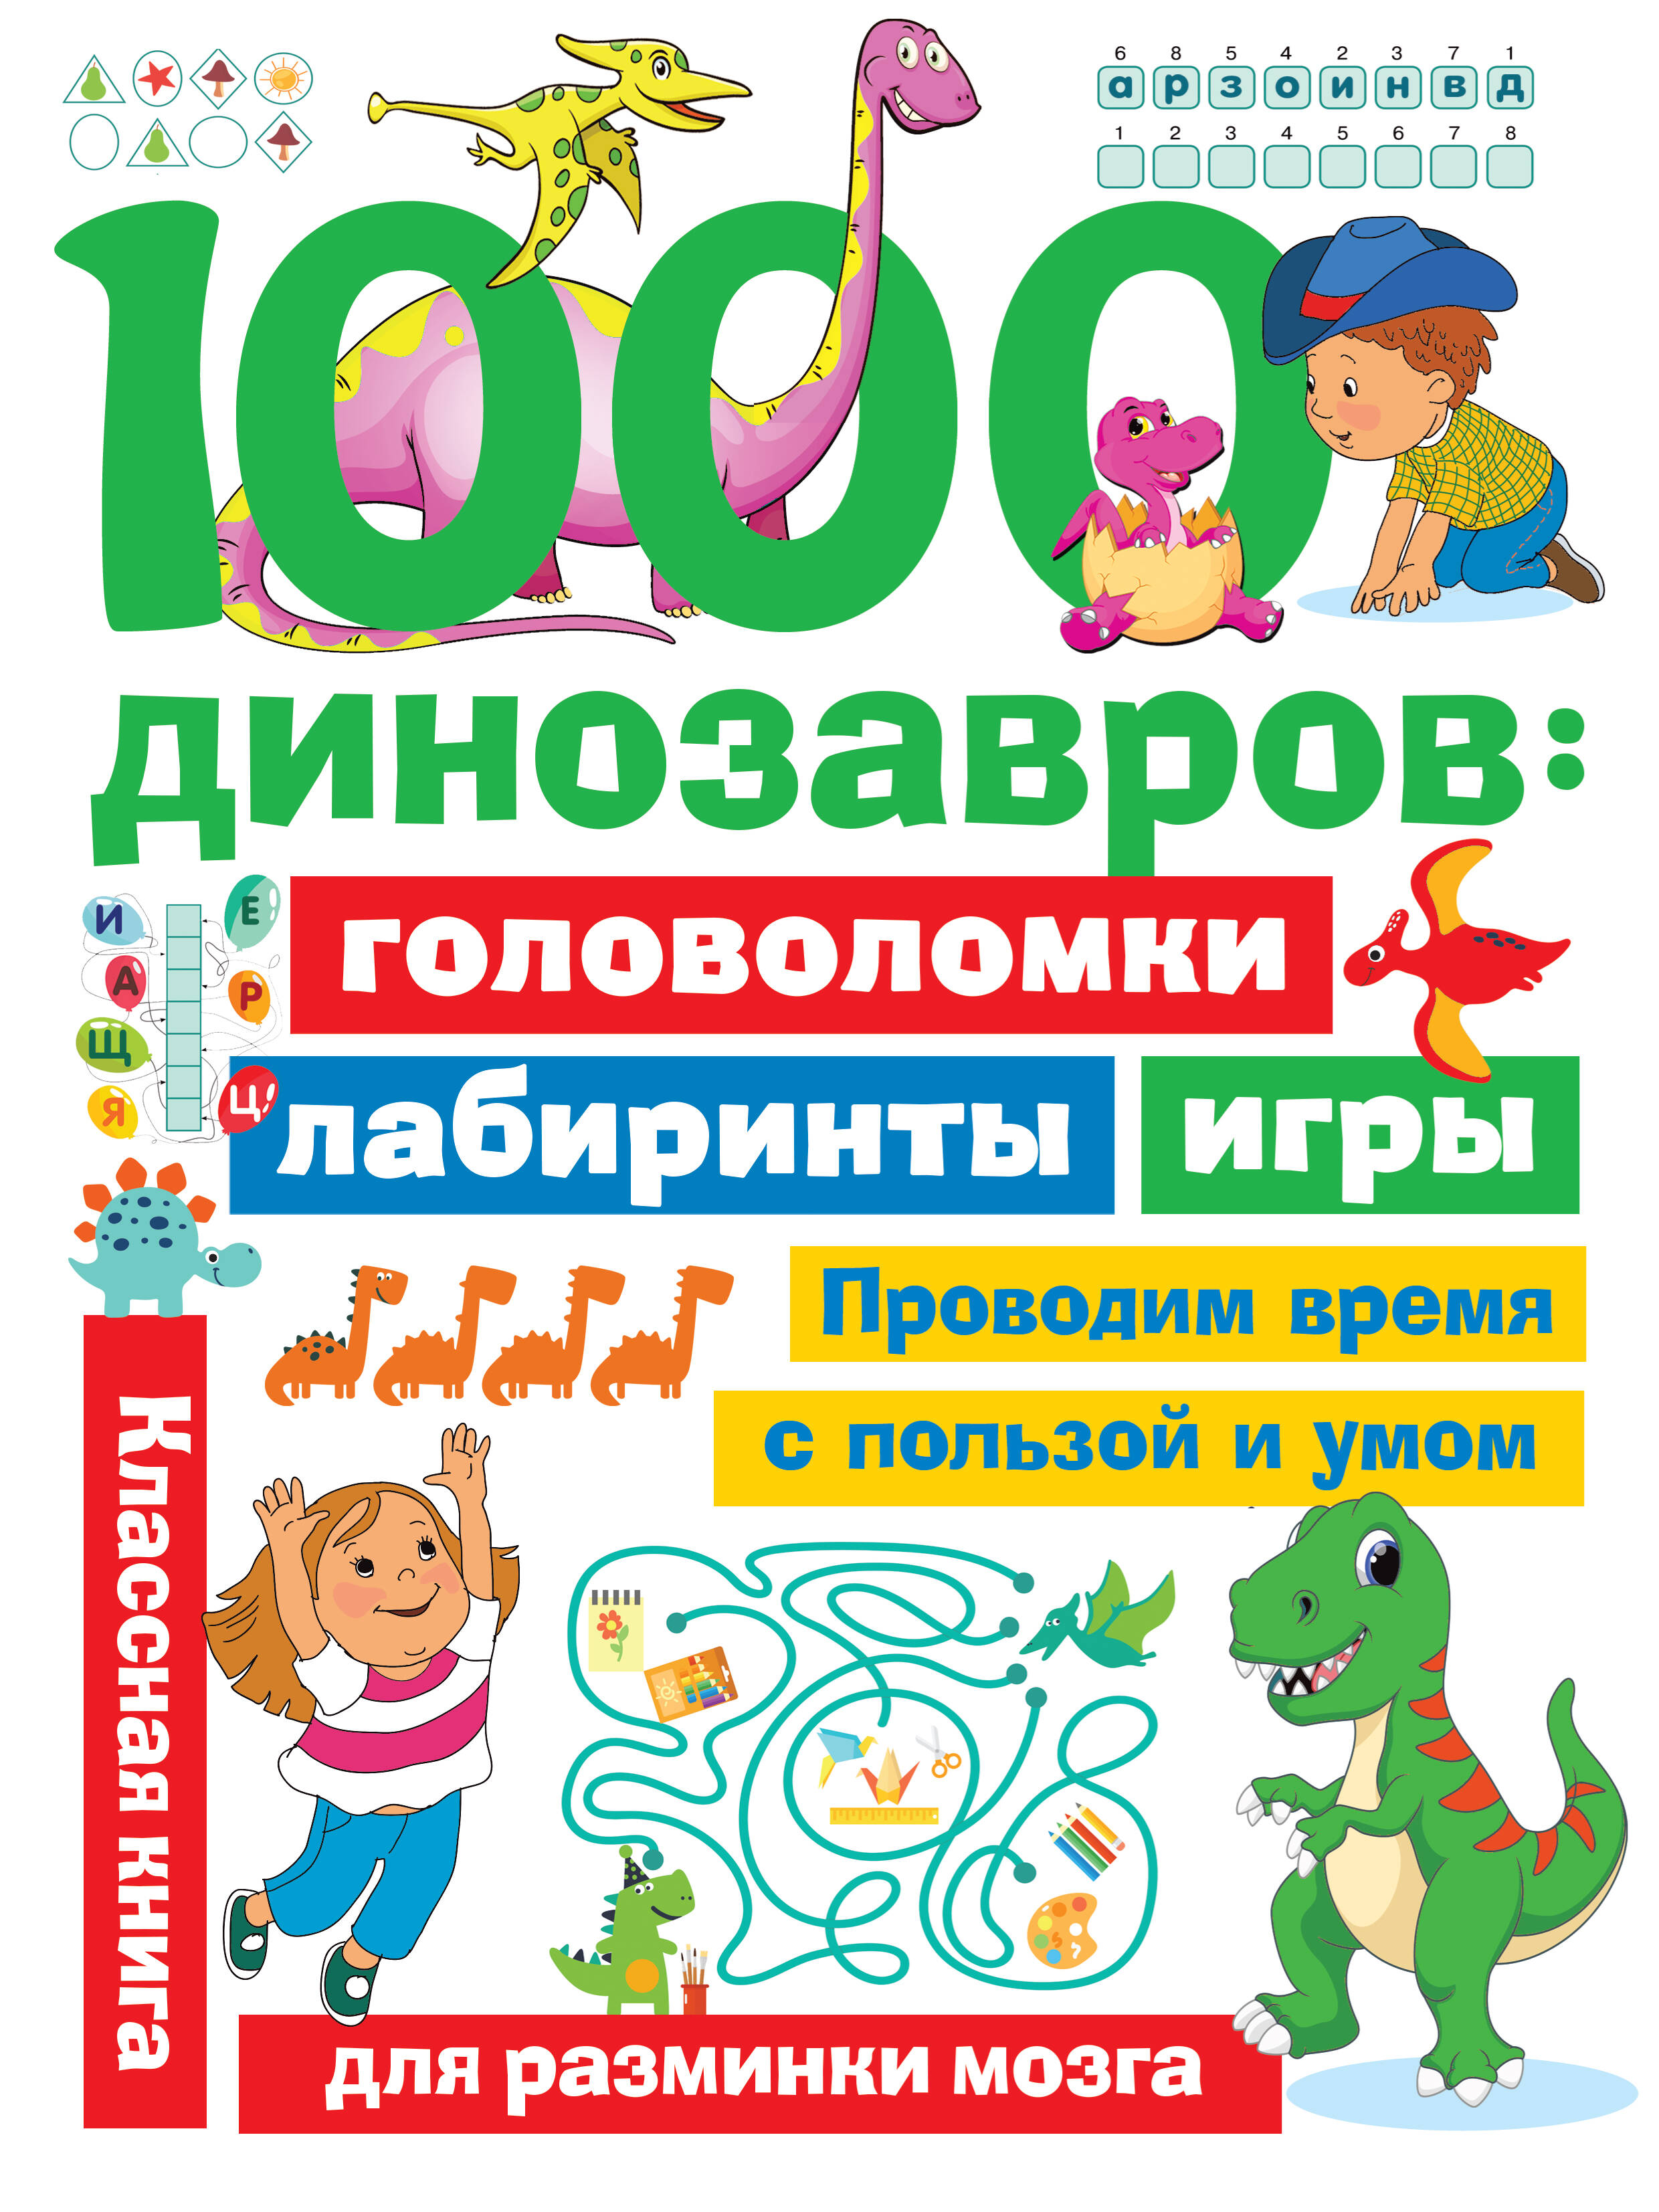  1000 динозавров: головоломки, лабиринты, игры - страница 0